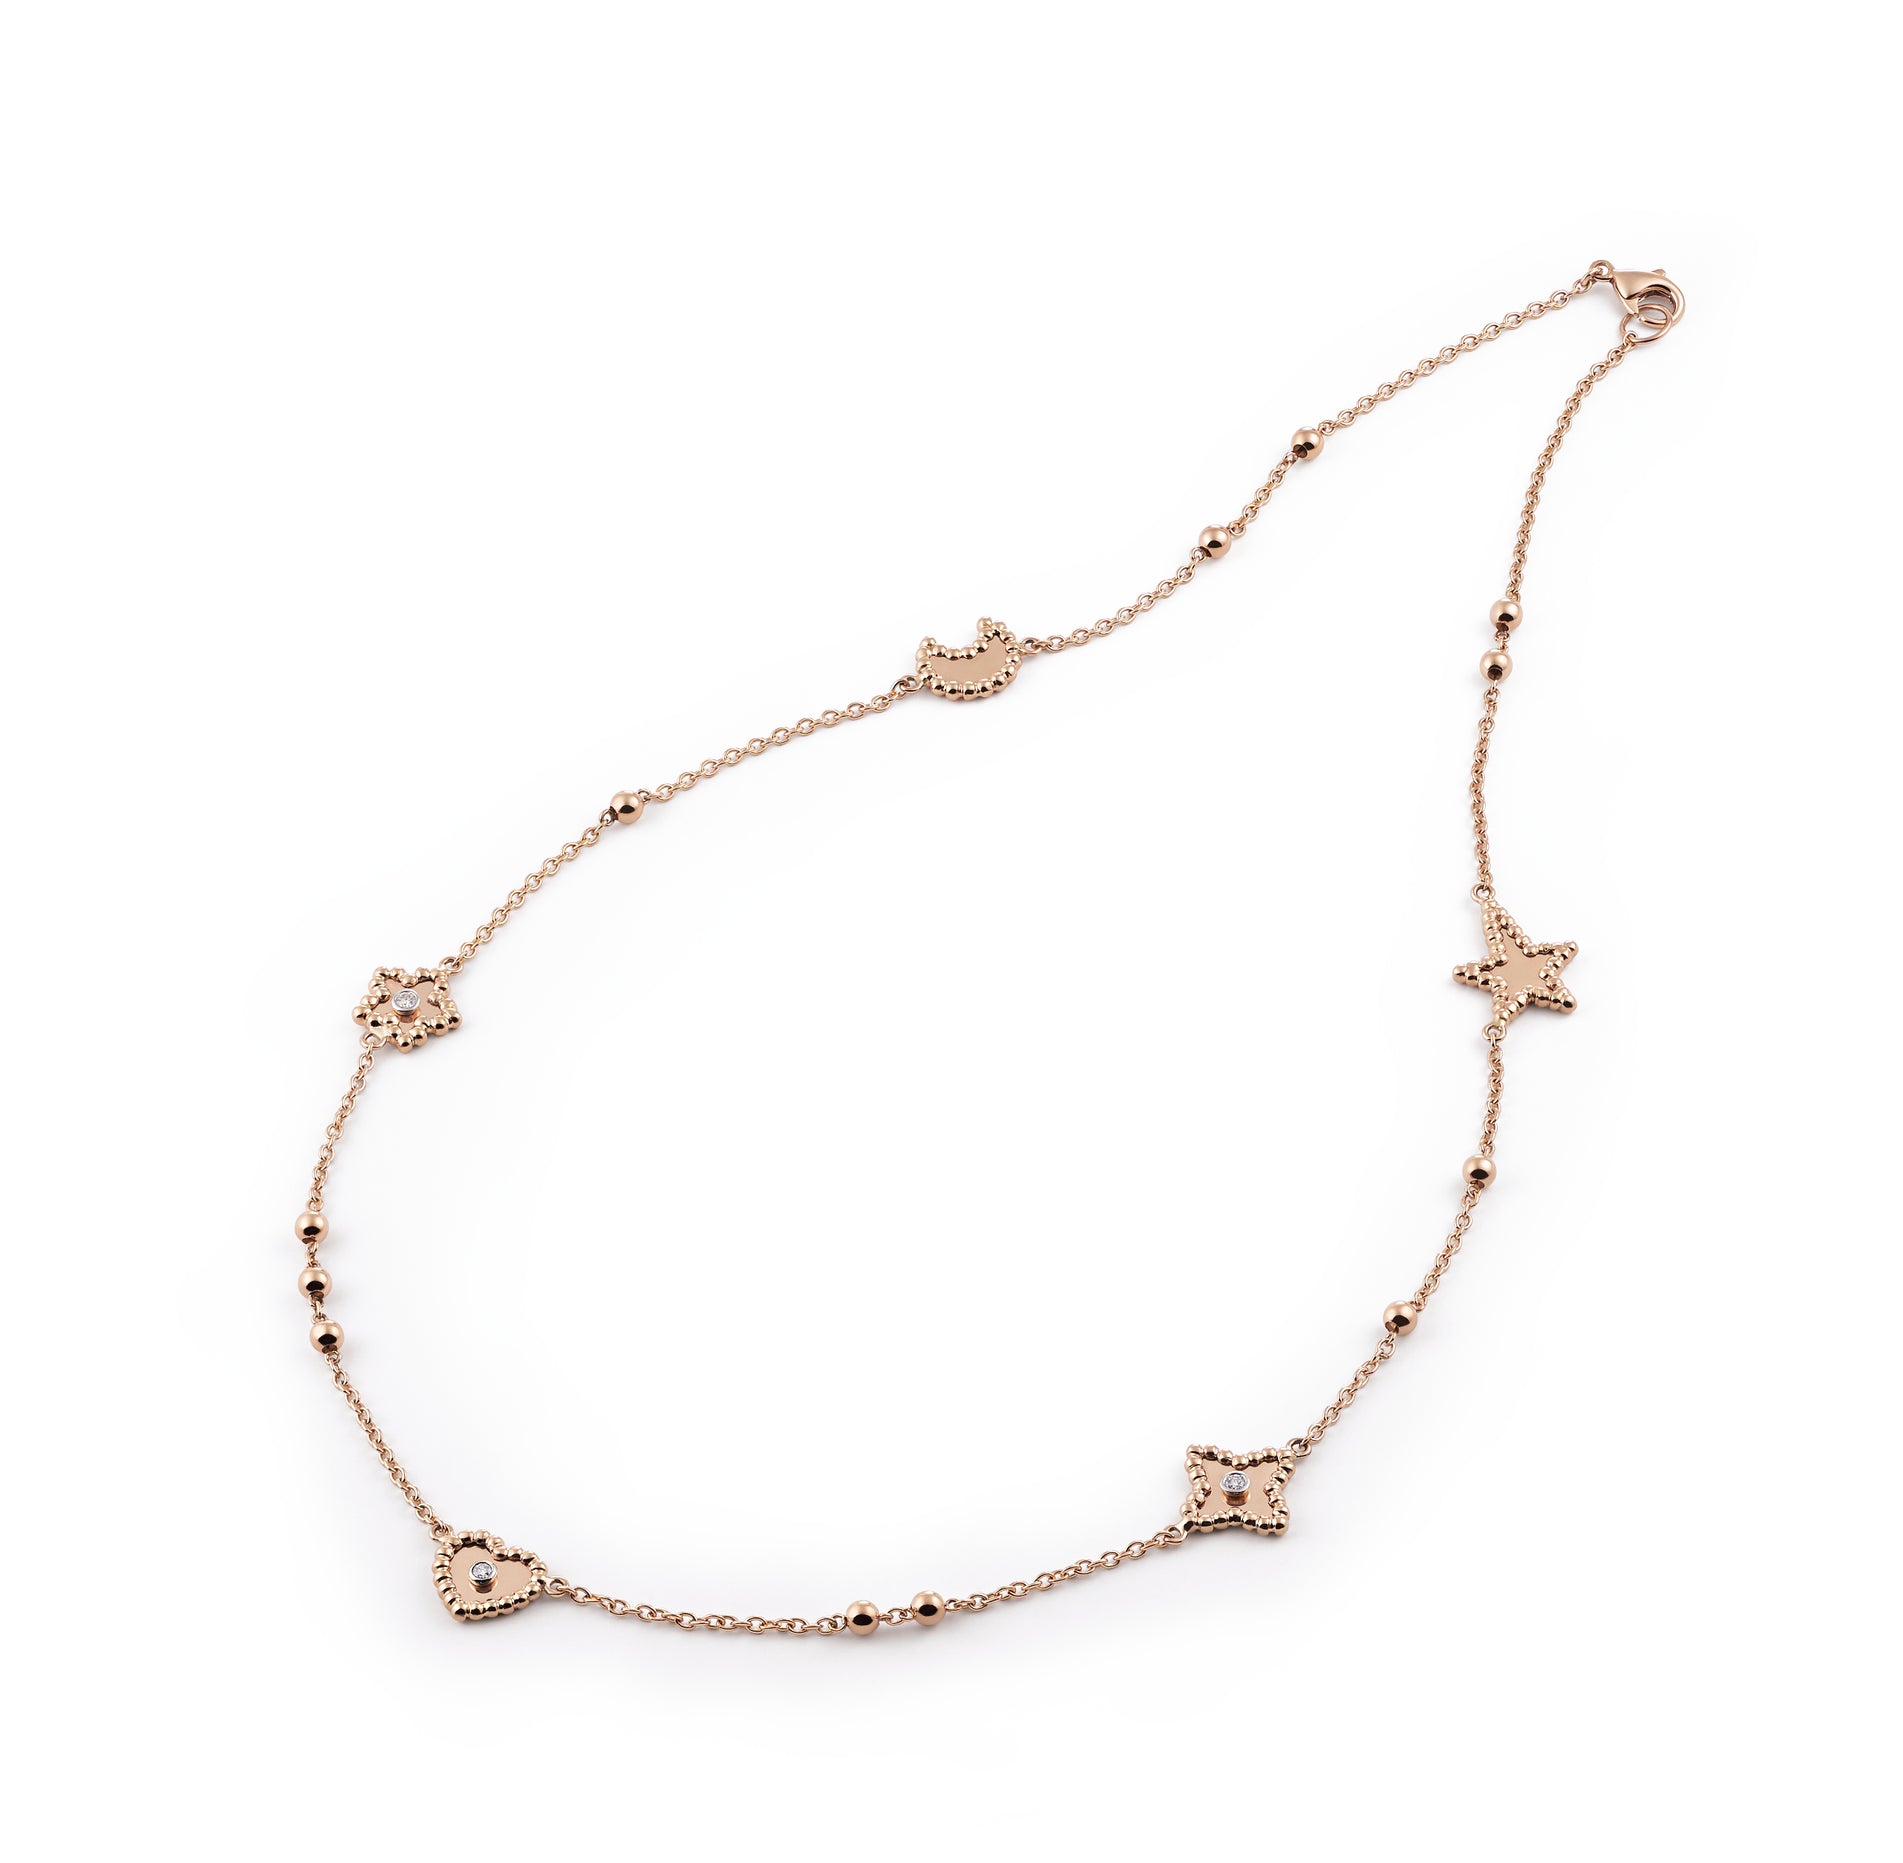 Al Coro Palladio Necklace in 18k Rose Gold with Diamonds - Orsini Jewellers